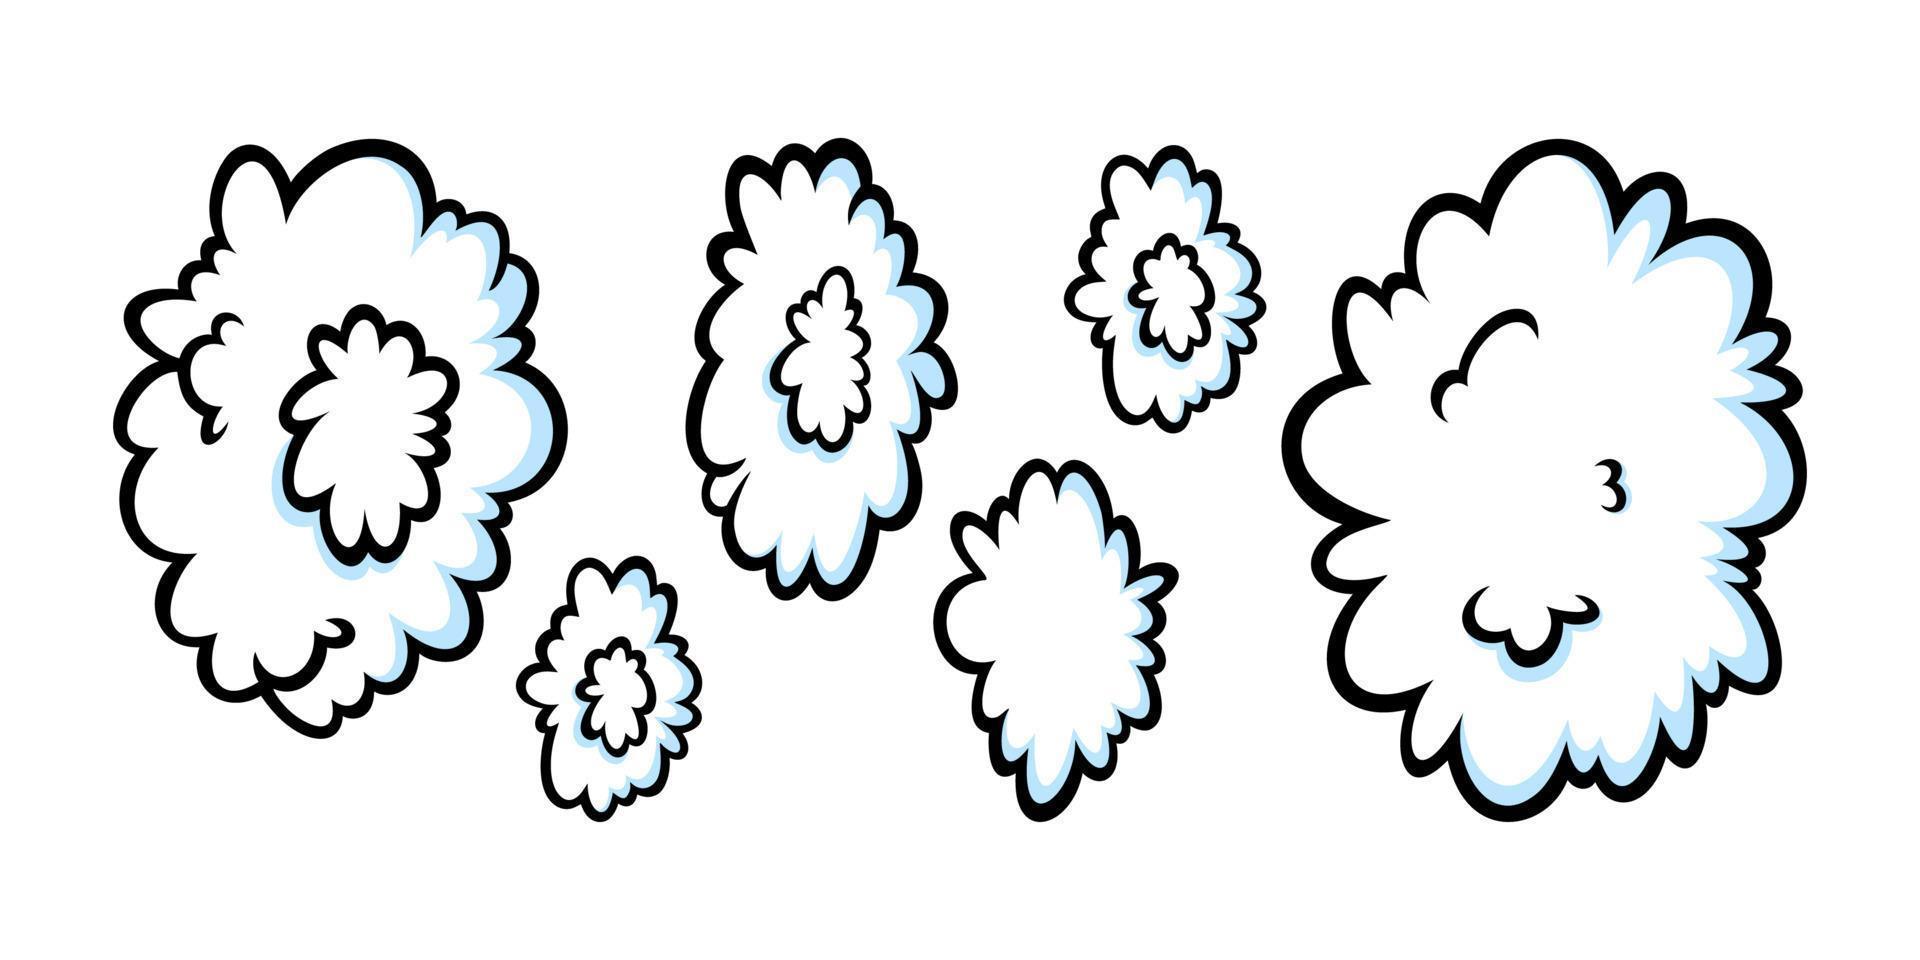 Dampfringe im Comic-Stil. wachsende Reihe runder Dampf- oder Rauchwolken für Zigarre, Zigarette oder Zeitraffer. Vektor-Illustration vektor